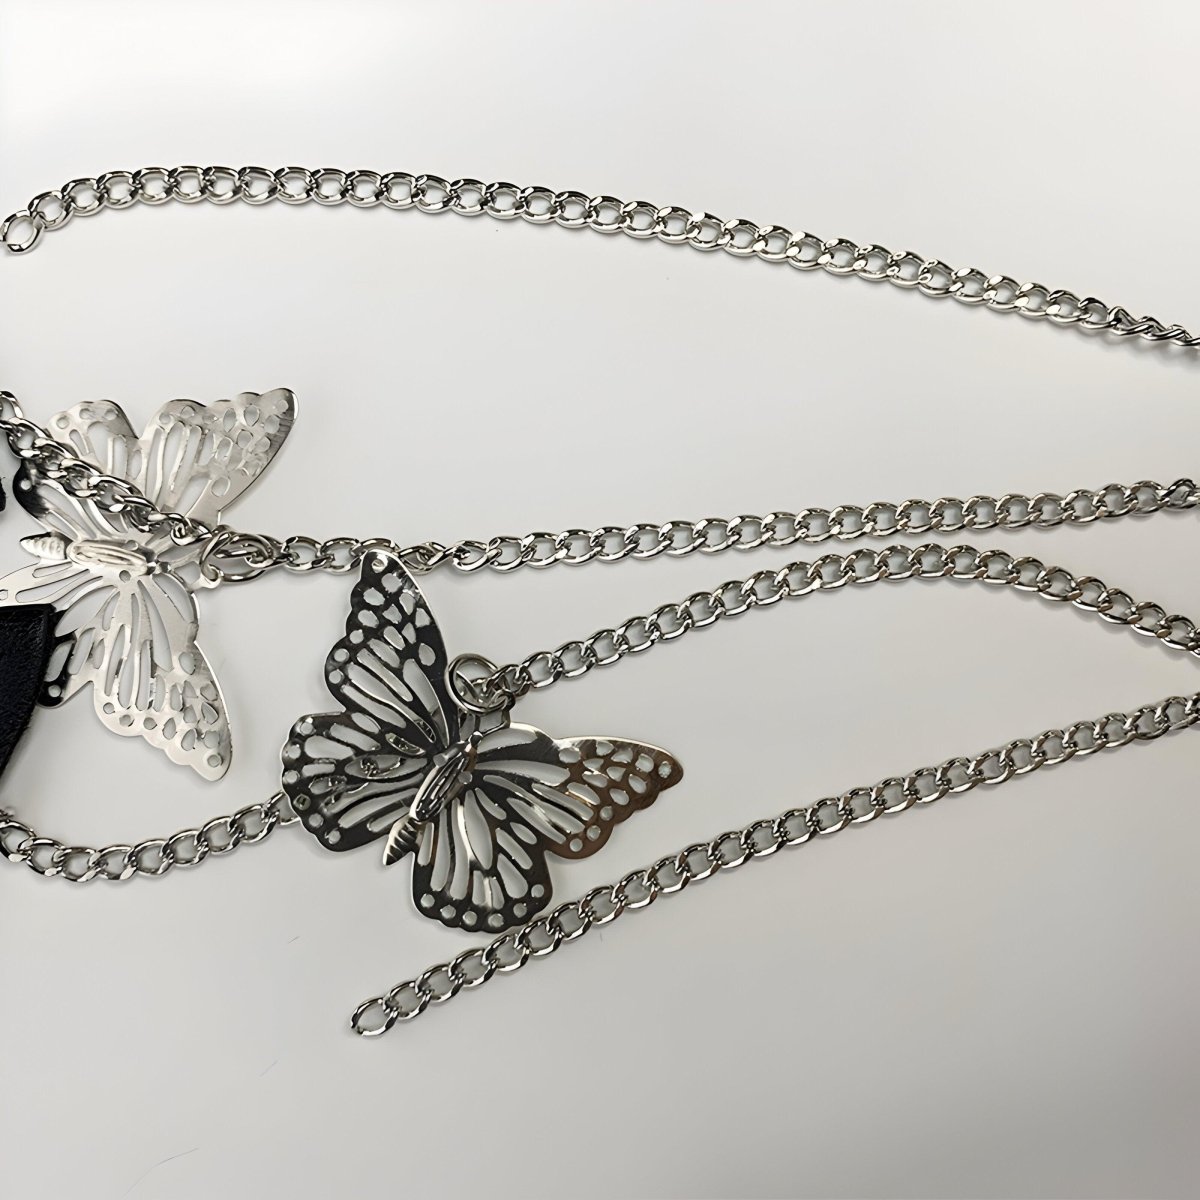 Ceinture corset avec chaîne papillons, modèle Molly - La Boutique de la Ceinture